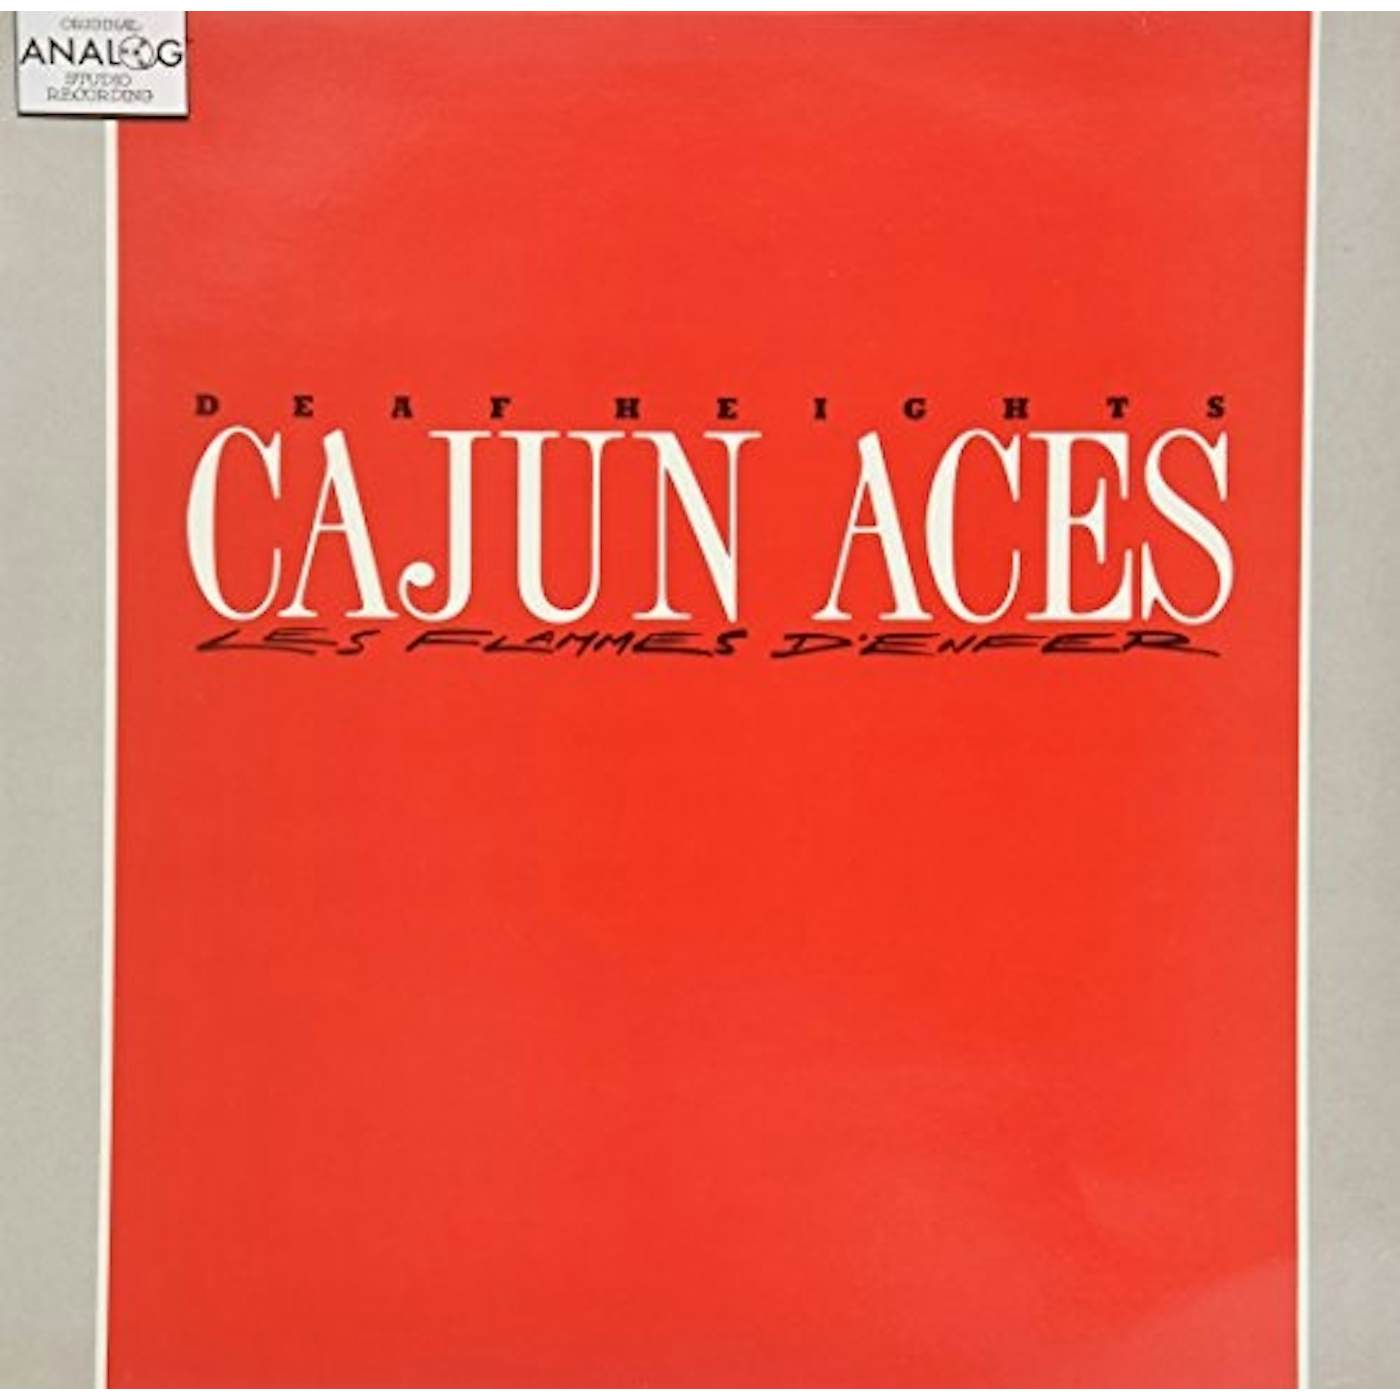 The Cajun Aces Les Flammes D'Enfer Vinyl Record